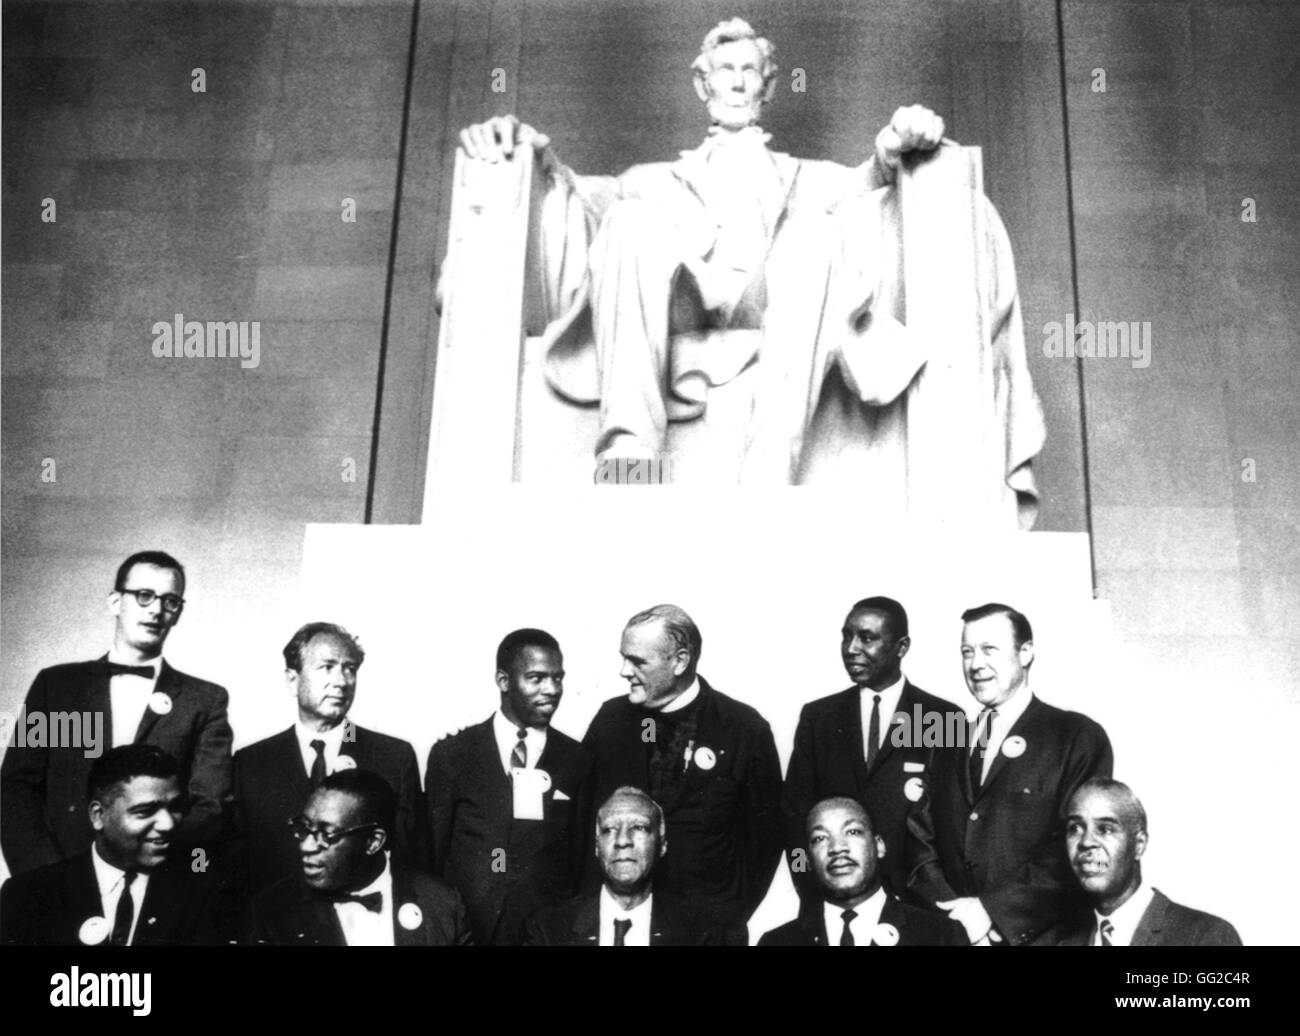 Nach die Demonstration für Bürgerrechte, in Washington, der Führer der Bewegung (u. a. Martin Luther King) sammelten sich am Fuße der Lincoln Statue August 1963 Archive Vereinigte Staaten nationale. Washington Stockfoto